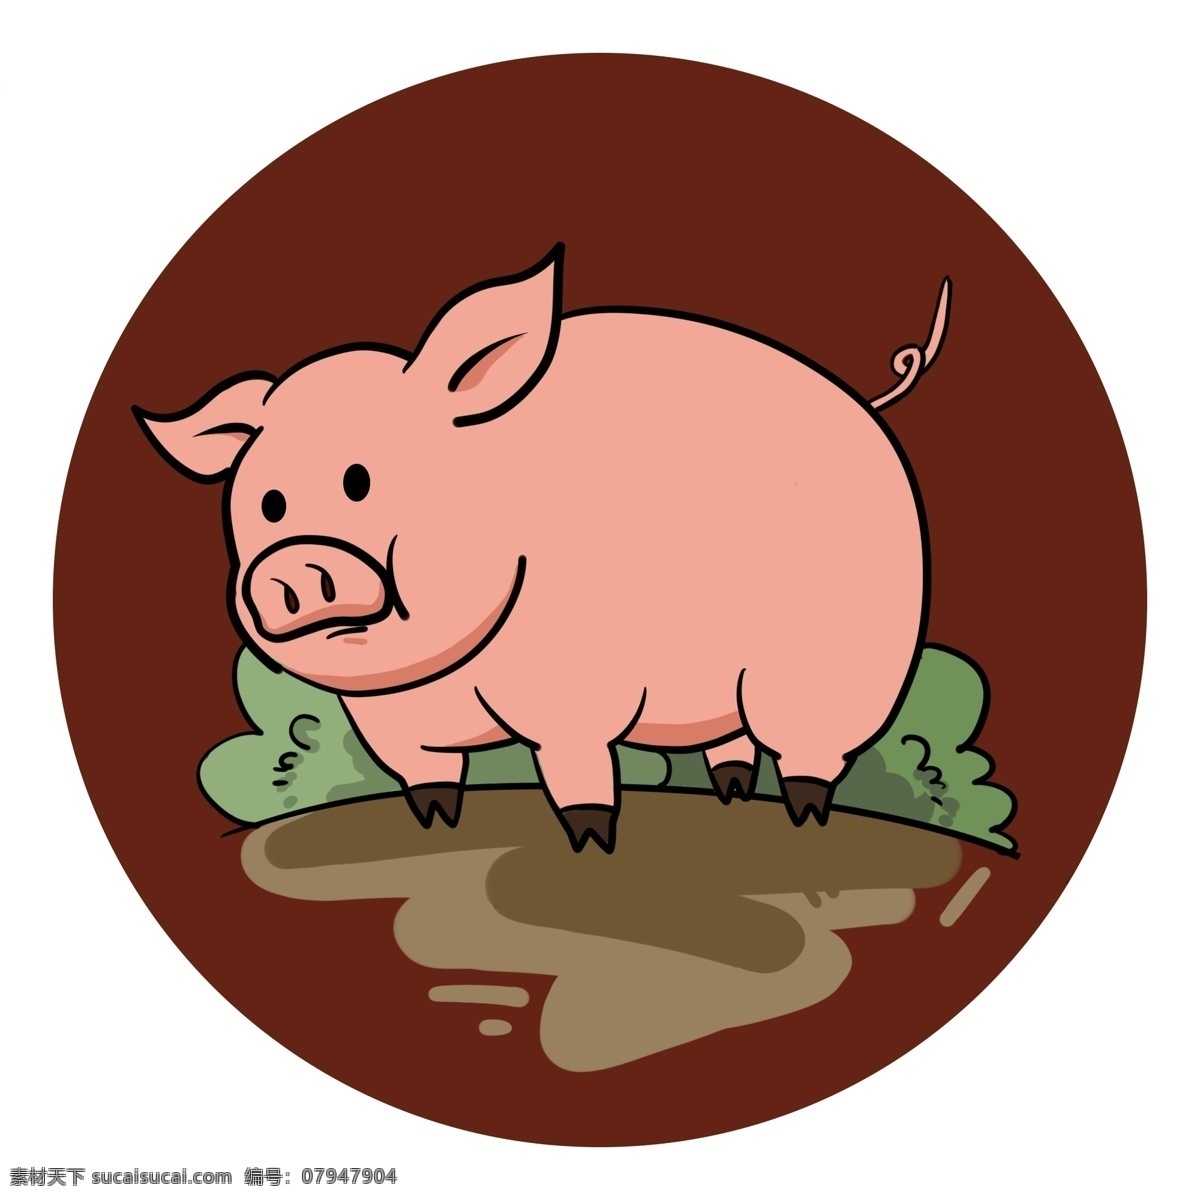 2019 猪年 猪 卡通 可爱 动物 形象 插画 装饰